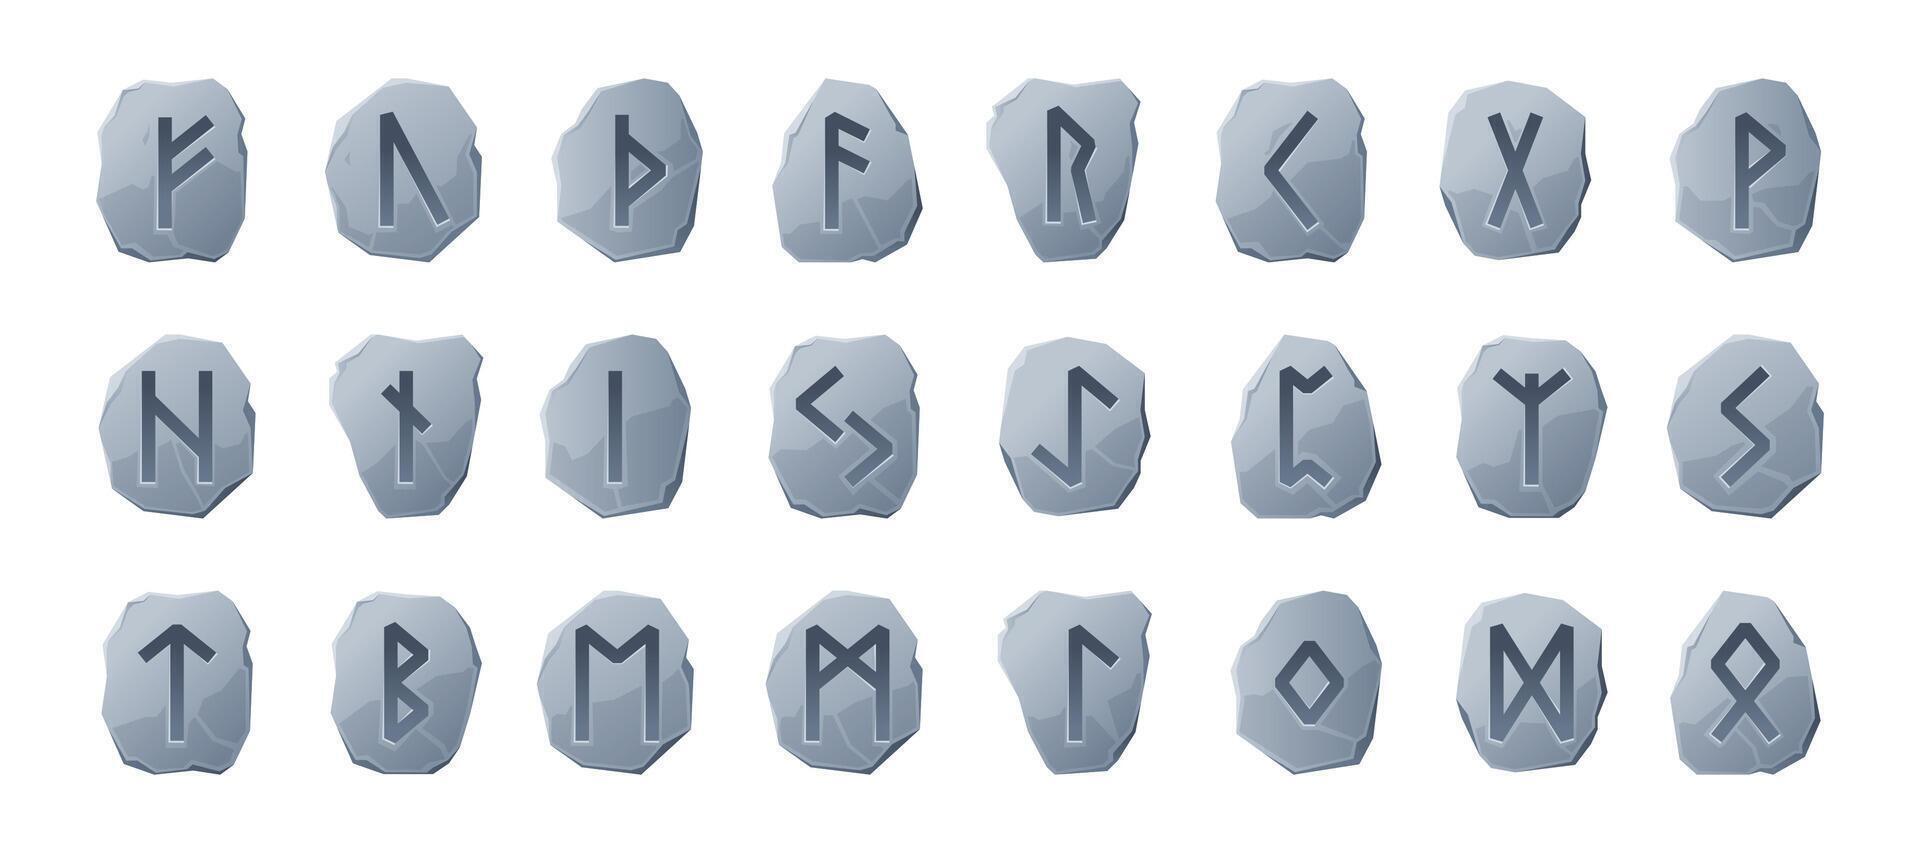 runique des pierres. scandinave viking sacré runes alphabet, vieux celtique nordique type des lettres futark Police de caractère symboles dessin animé style. vecteur isolé ensemble